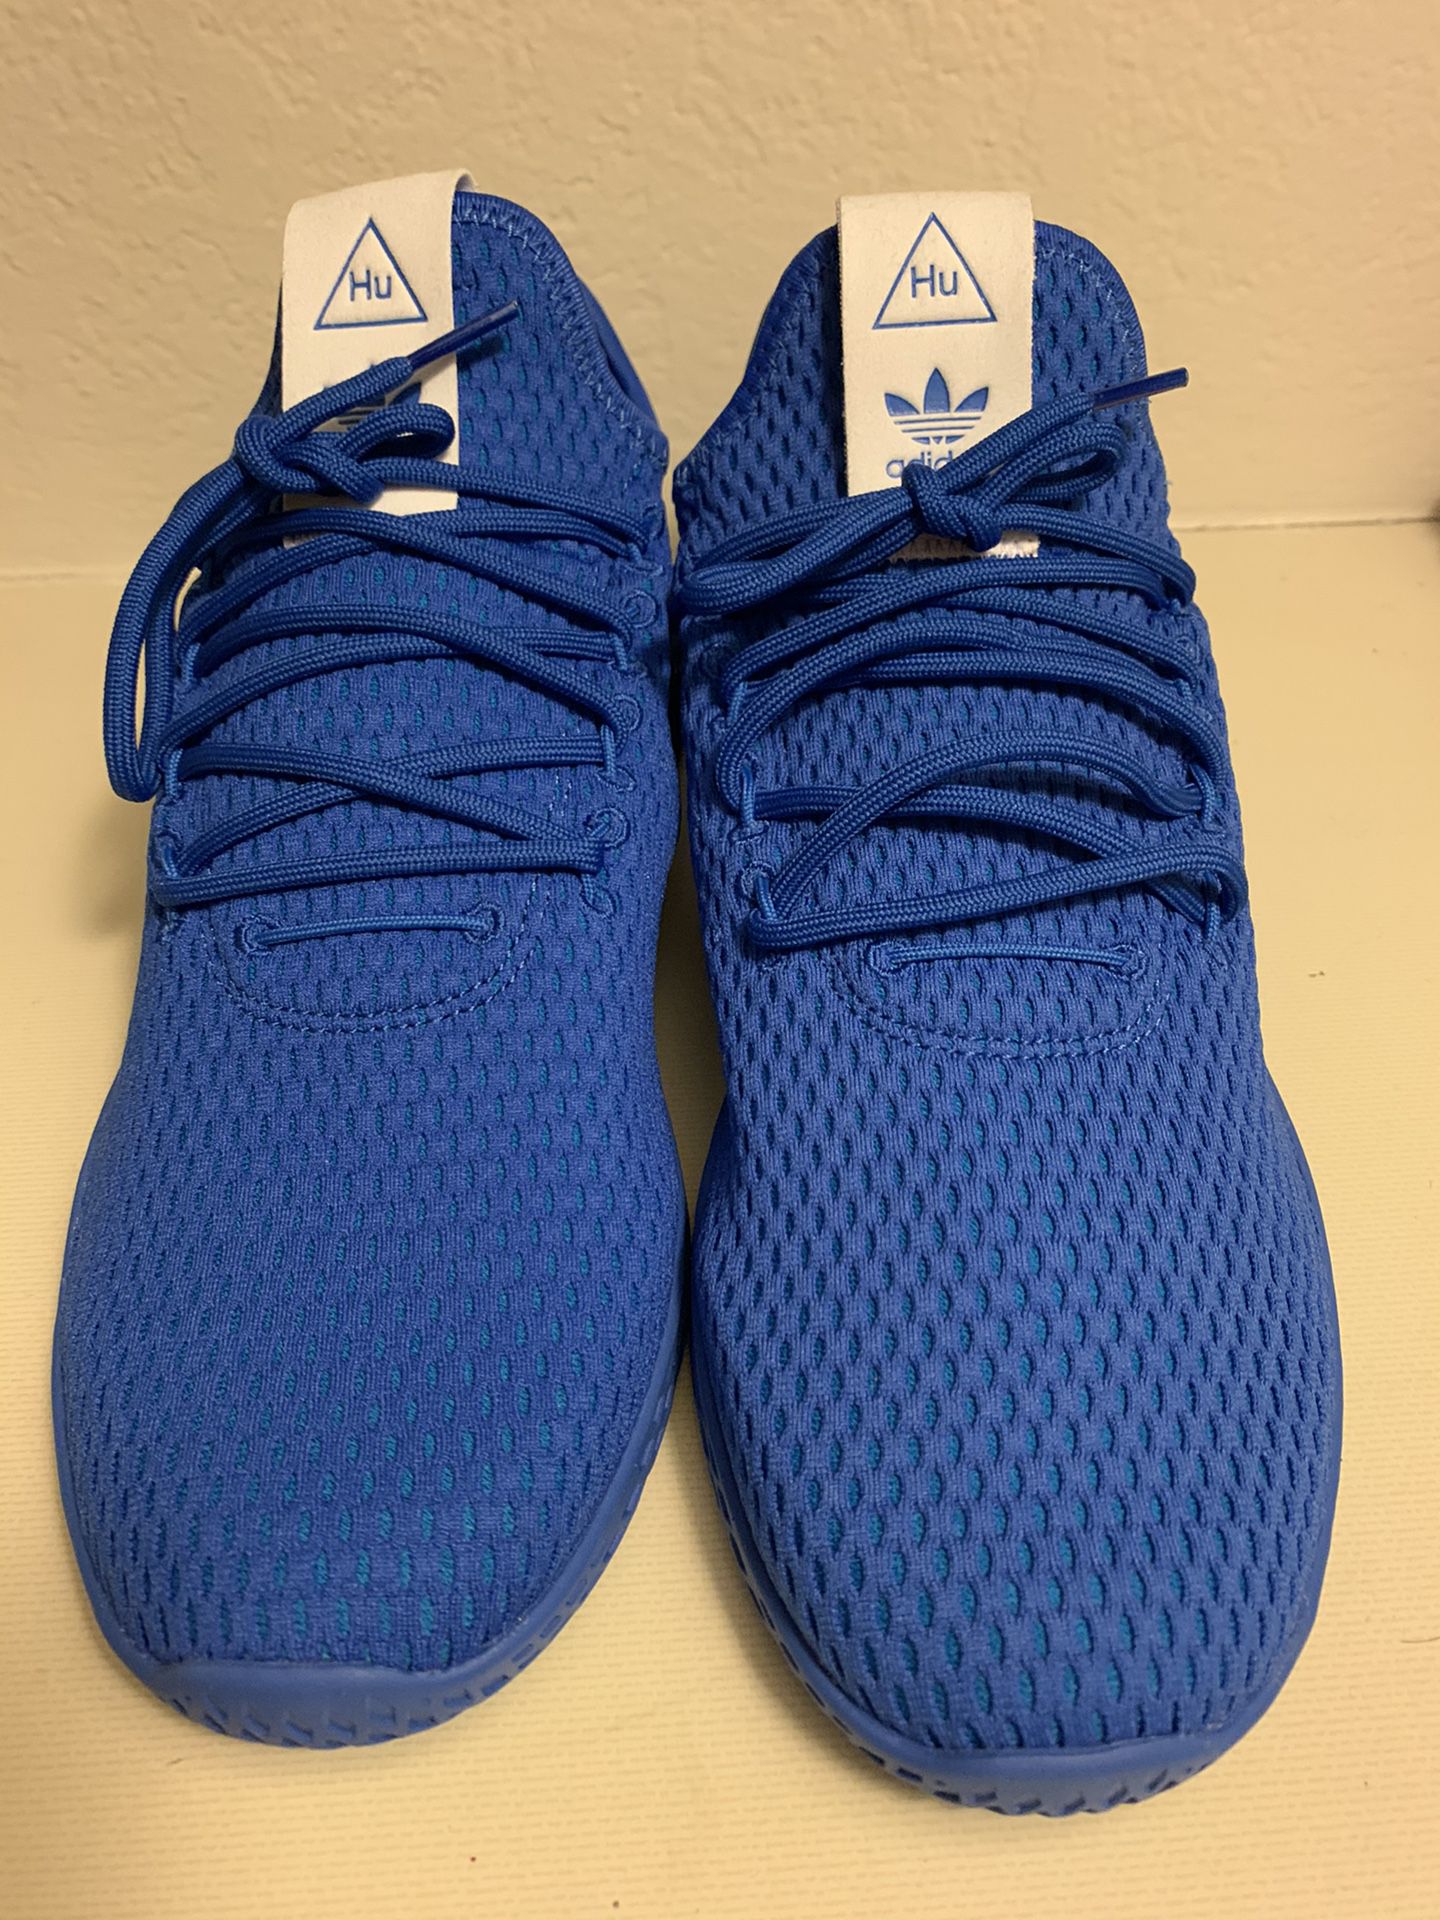 New no Box Adidas Pharell X Tennis Hu ‘Solid Blue’ 8 1/2